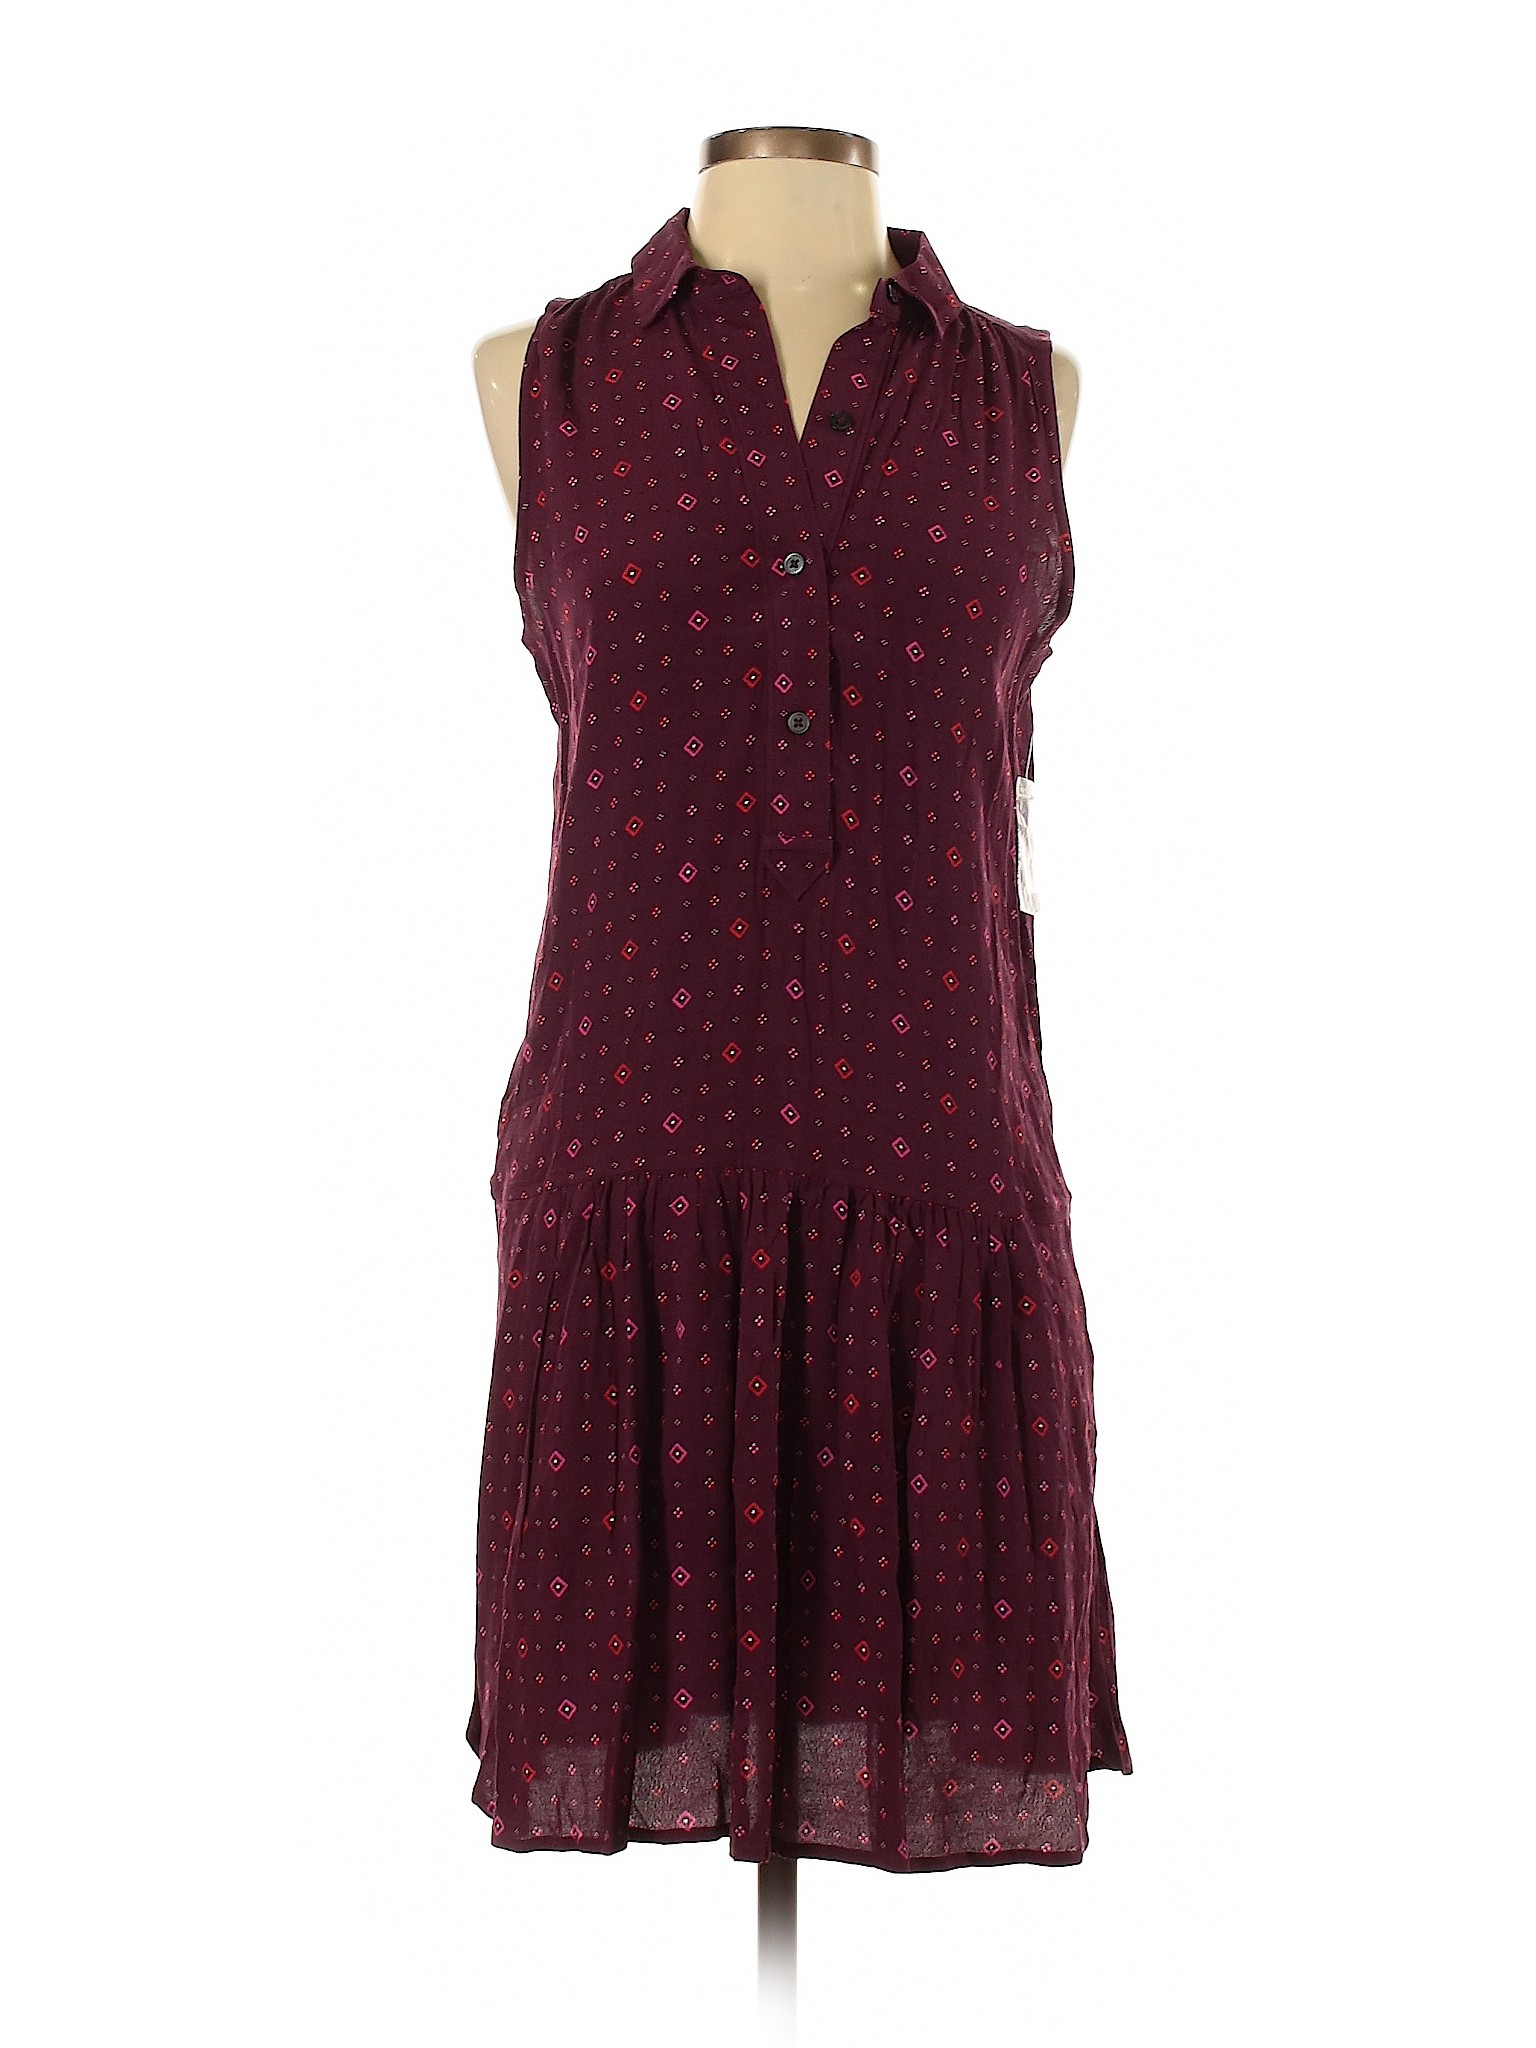 Gap Women Purple Casual Dress XS | eBay